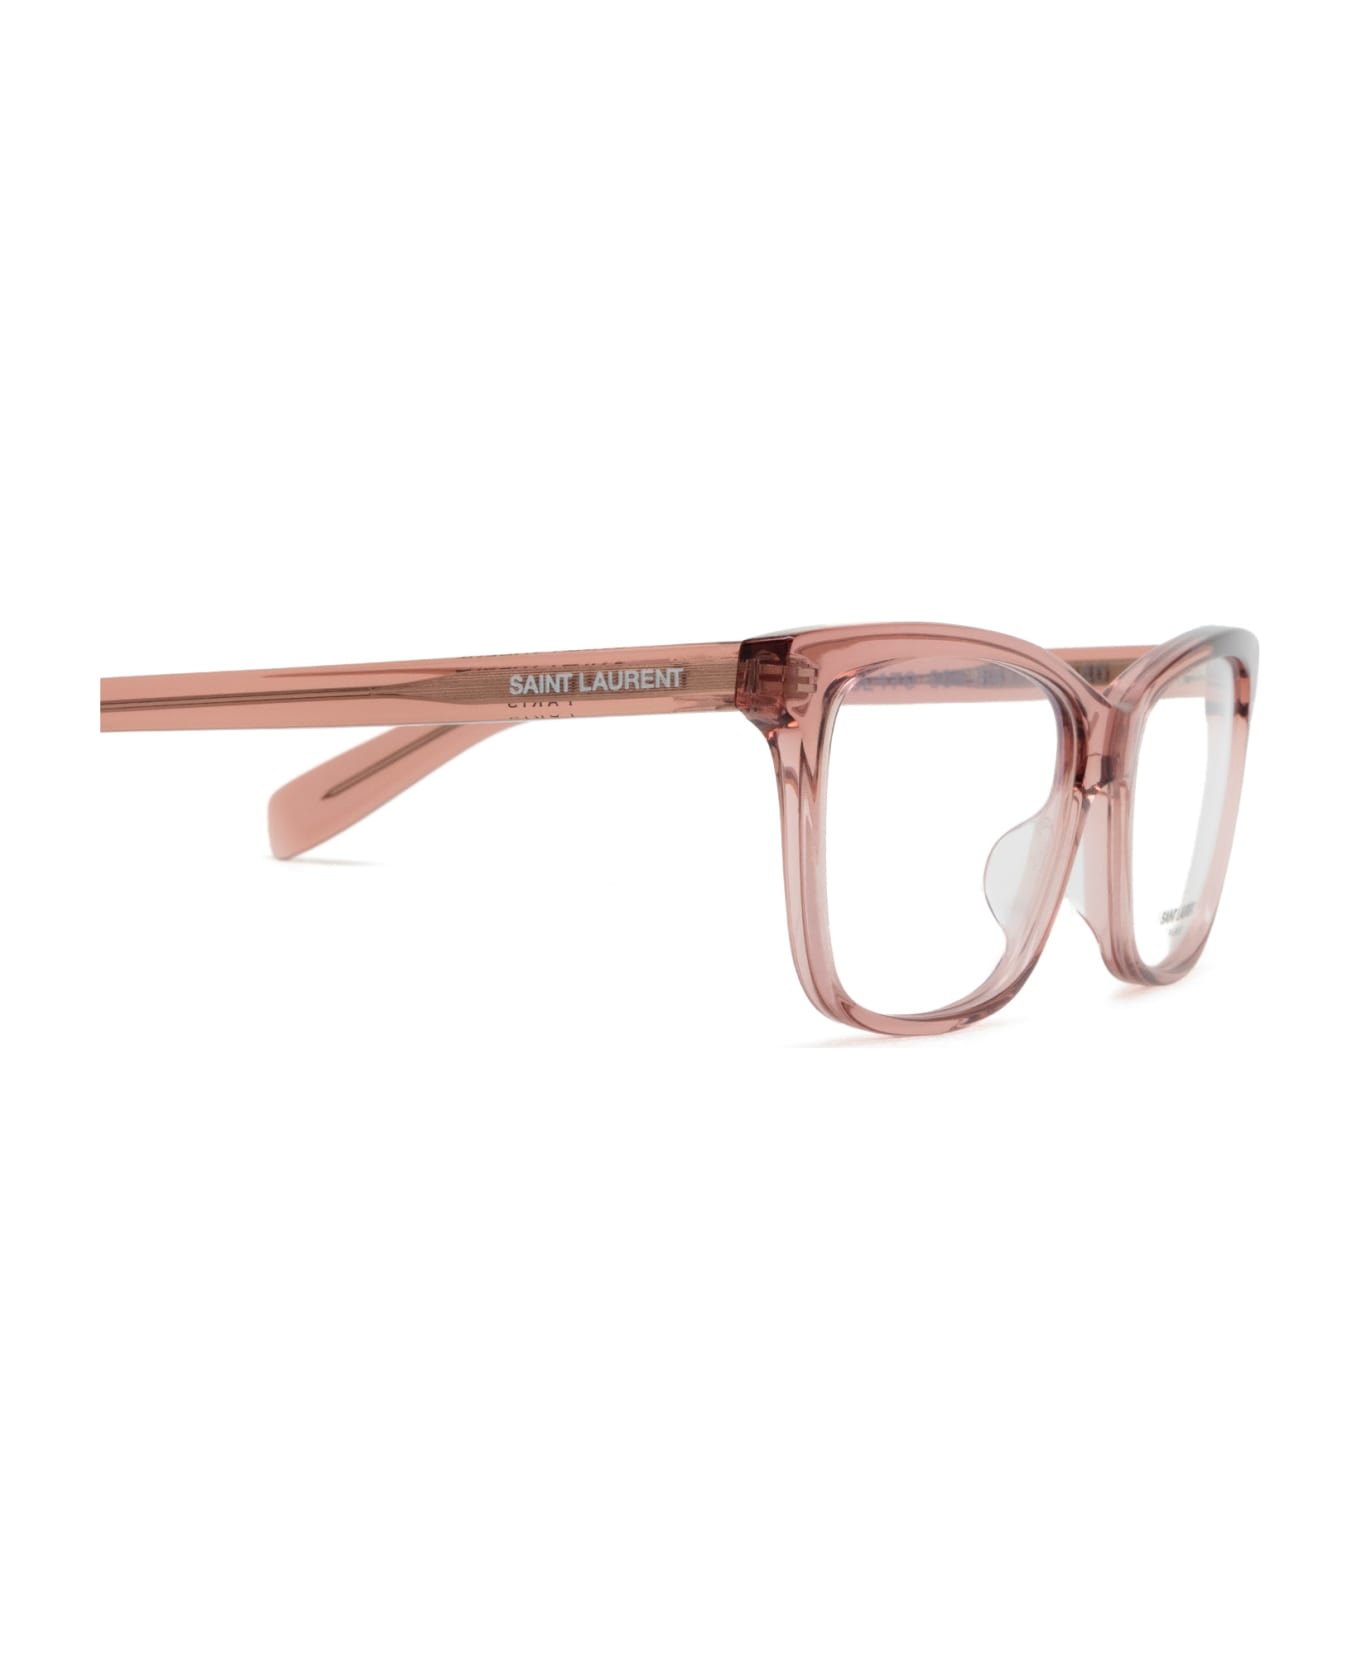 Saint Laurent Eyewear Sl 170 Nude Glasses - Nude アイウェア